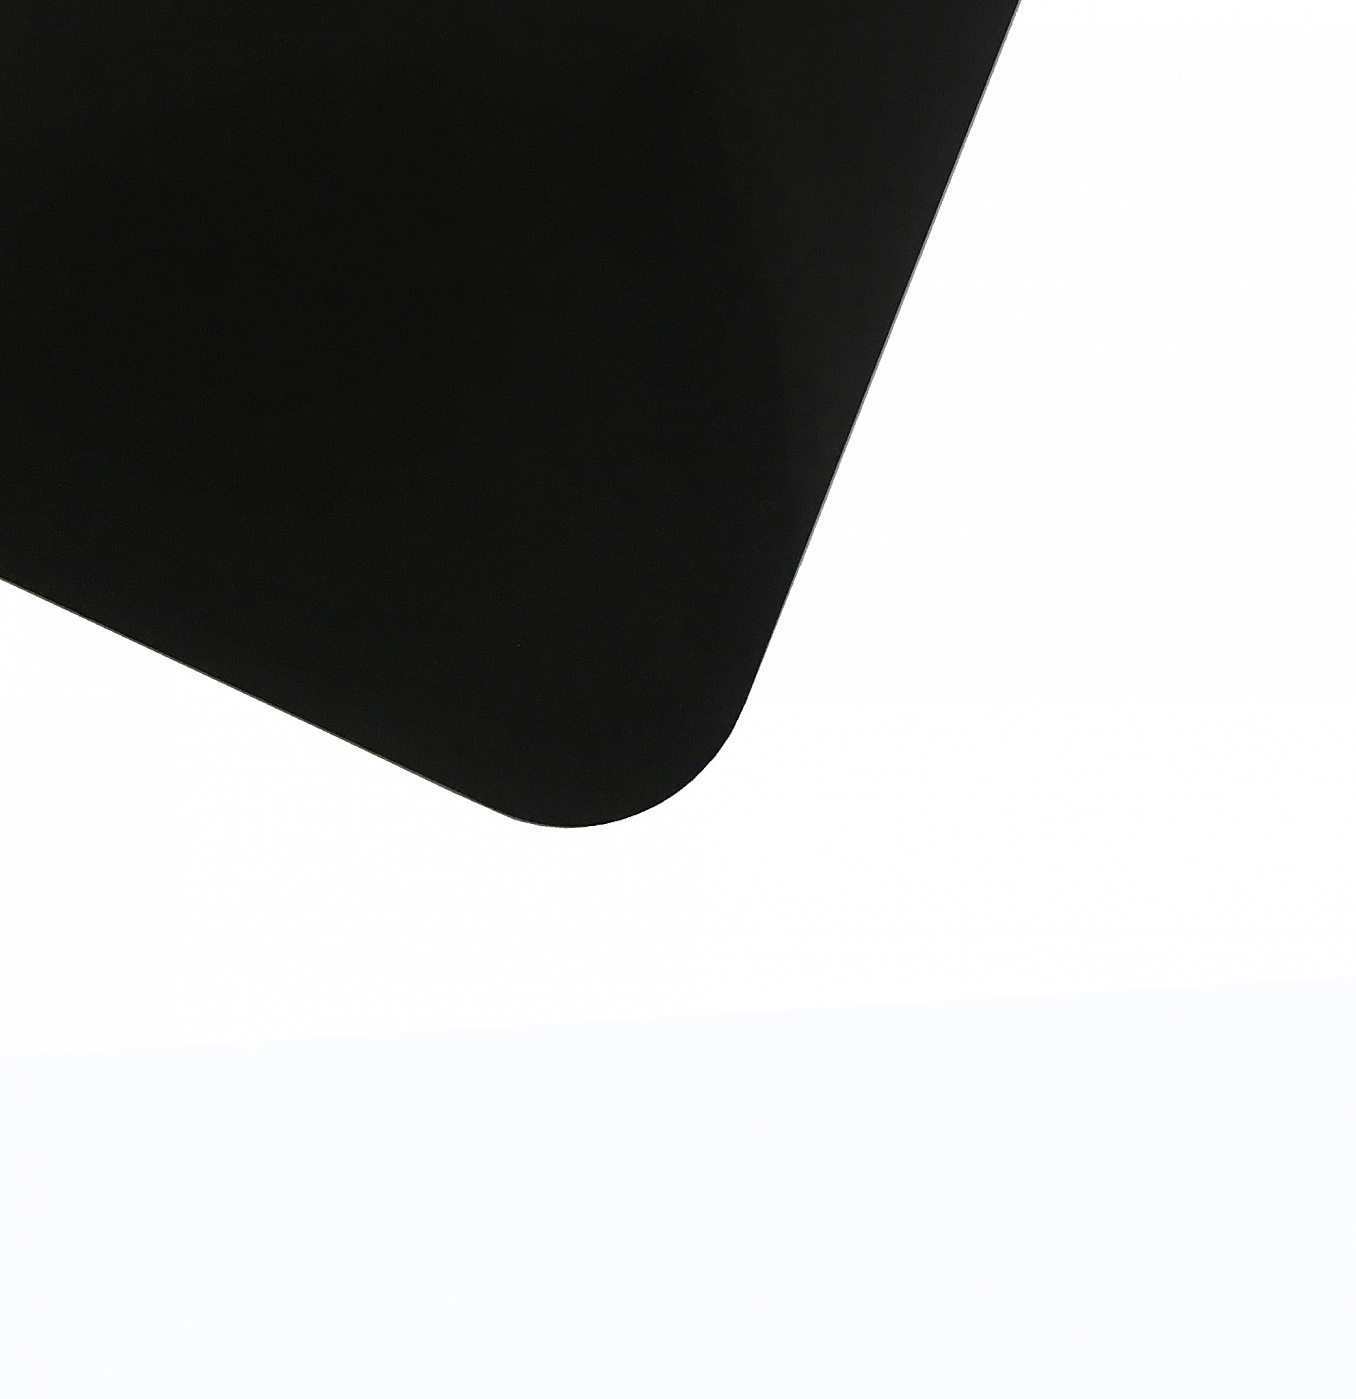 Планшет для пленэра из оргстекла 3 мм, под лист размера А2, цвет черный